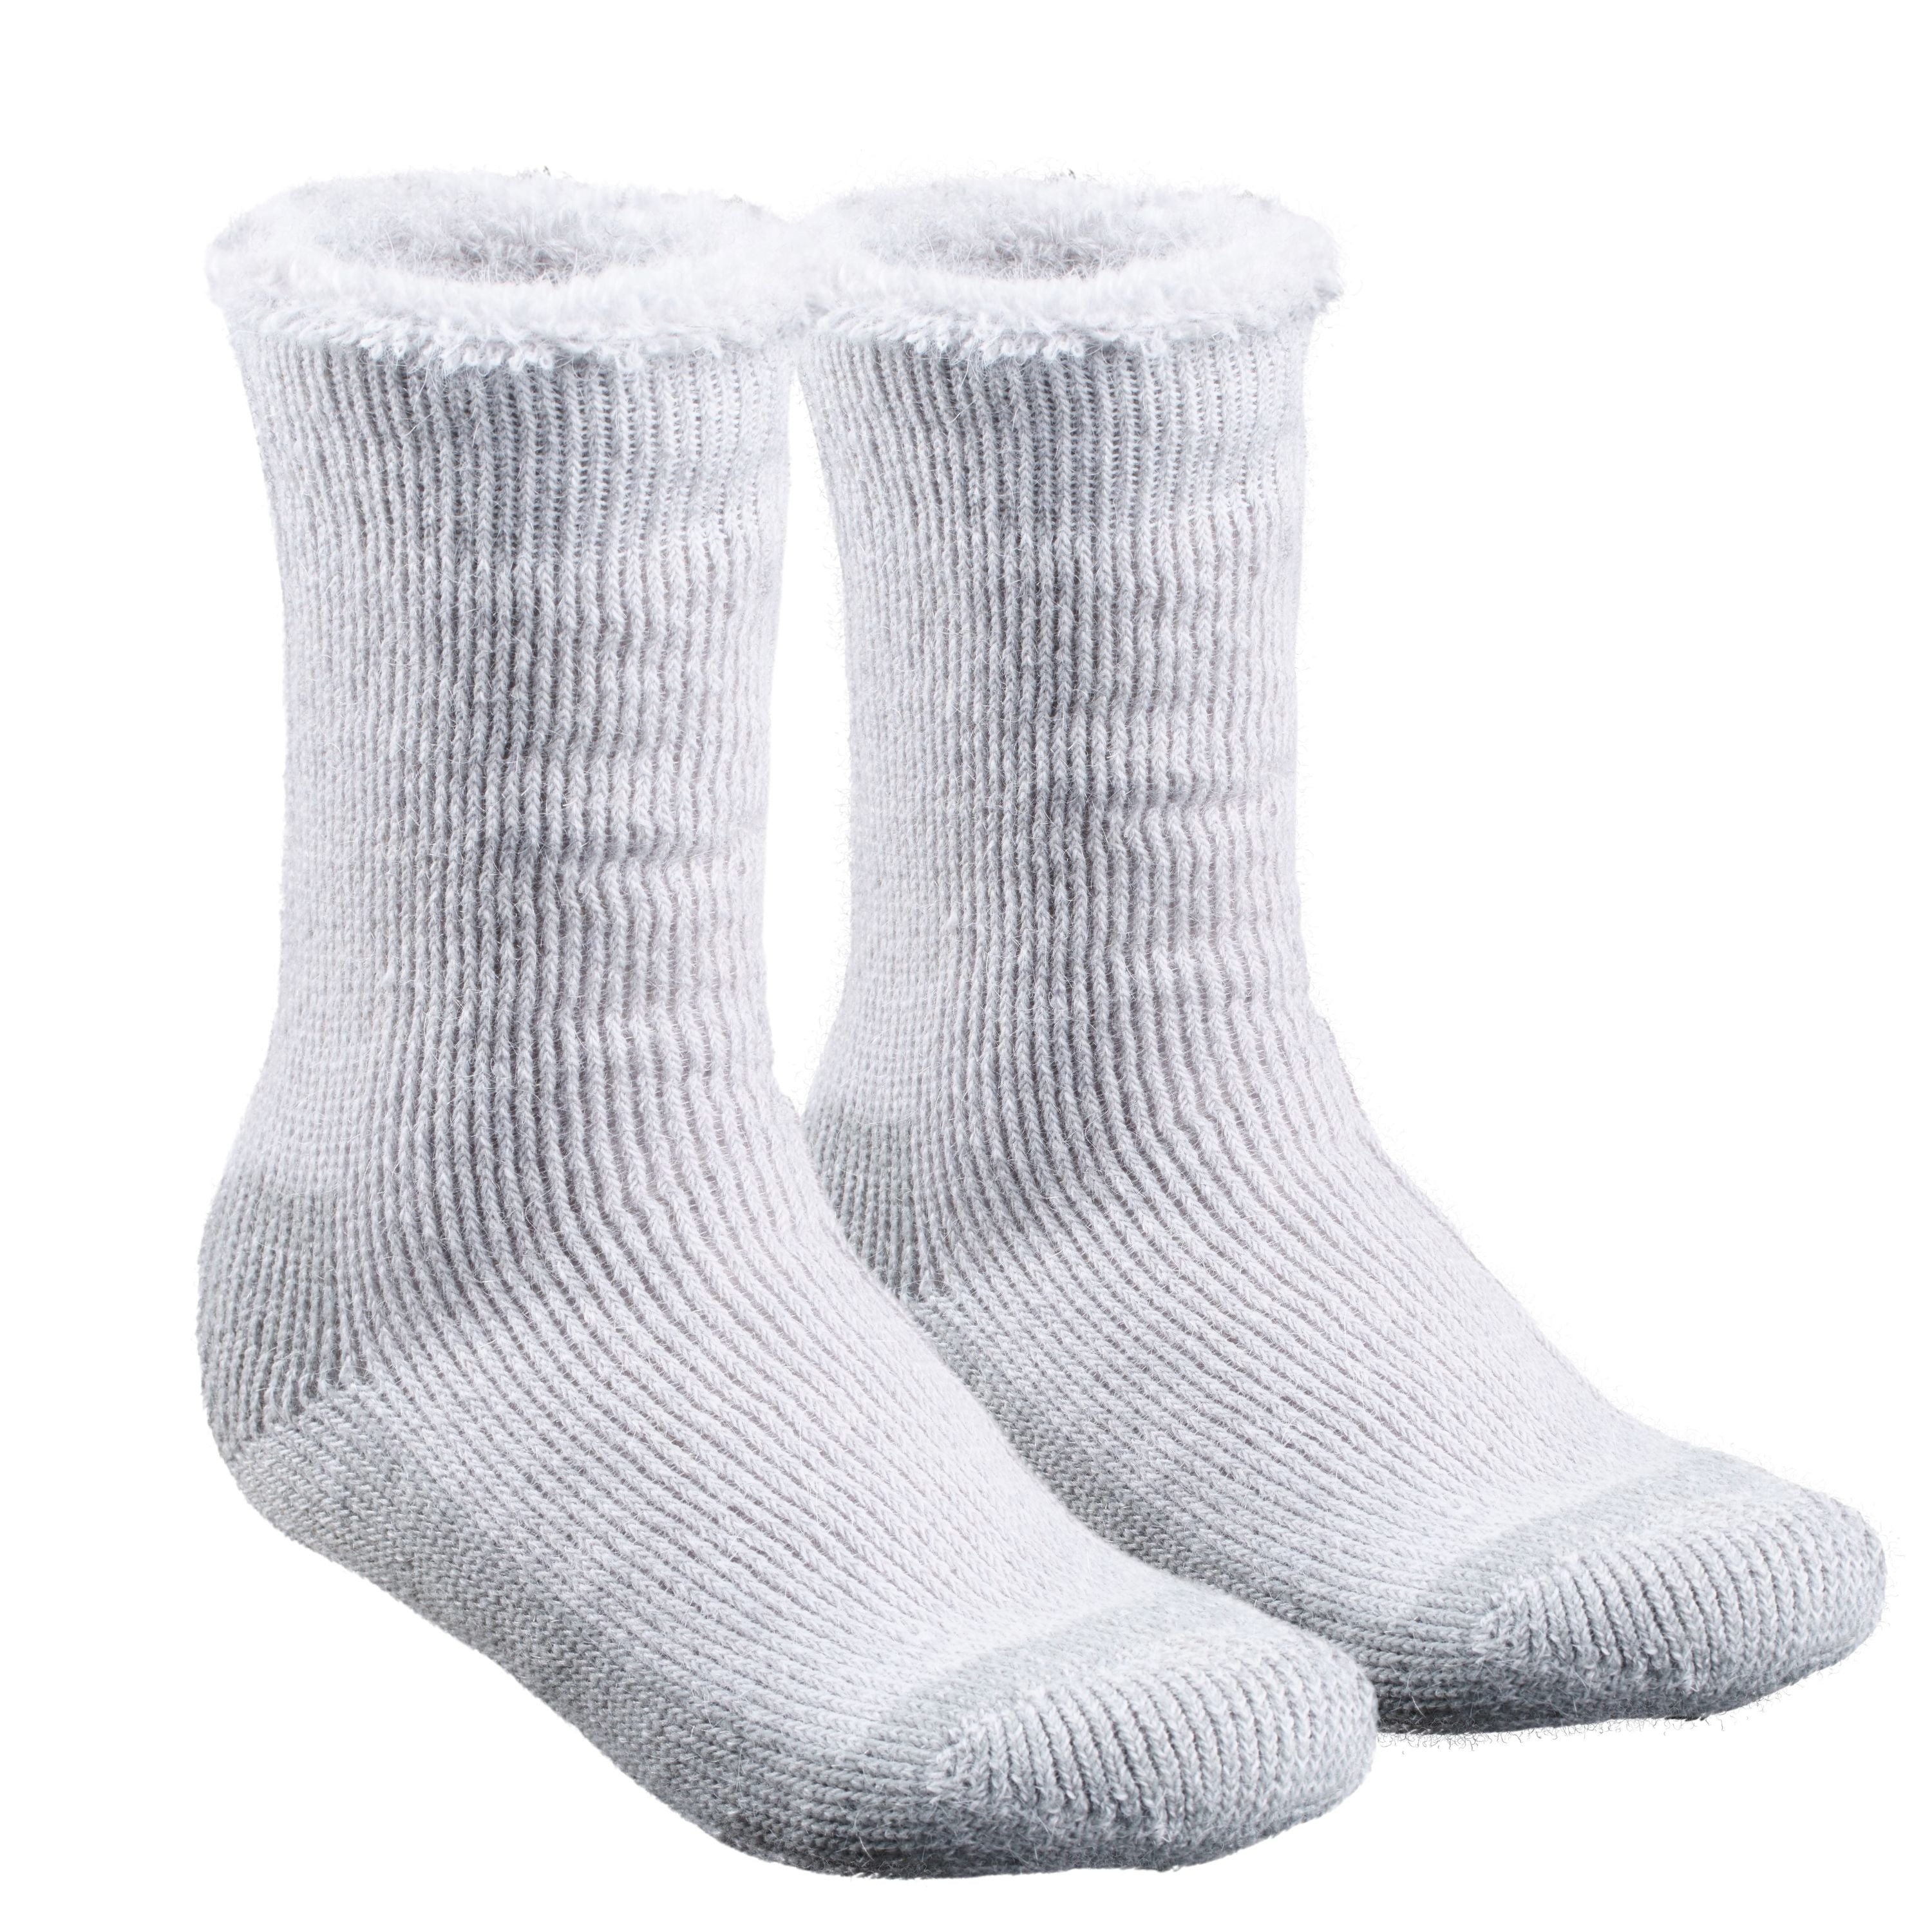 "Lugano" Mohair socks - Men's